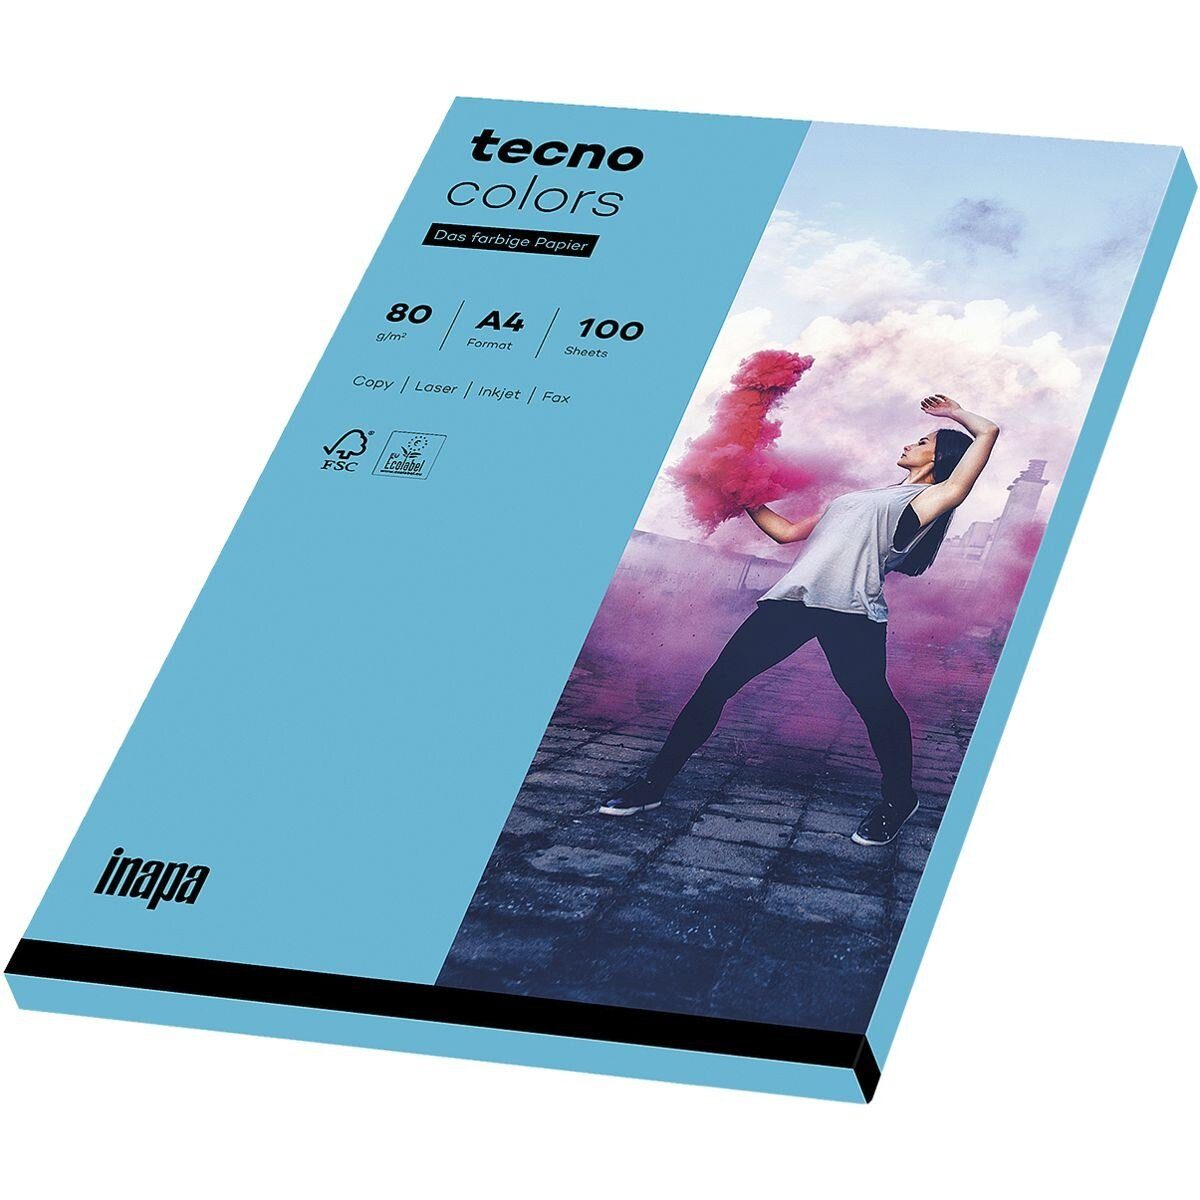 Kleinpack Rainbow, Kopierpapier g/m², blau Inapa Intensivfarben, DIN 80 Drucker- A4, tecno Format und